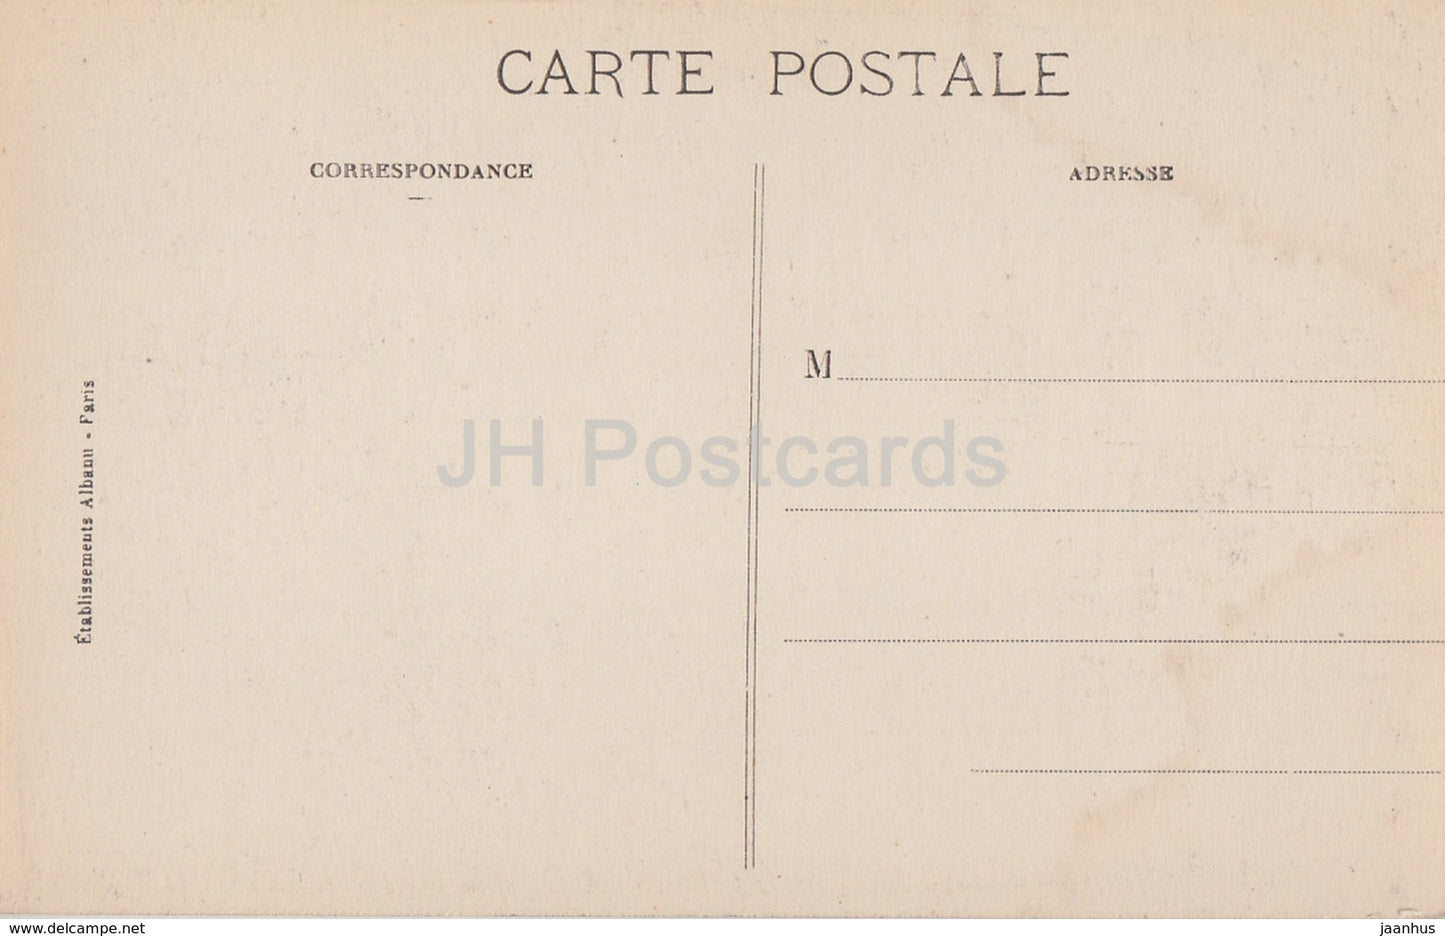 Blois - Le Chateau - Une Loggia de la Facade Francois I - castle - 53 - old postcard - France - unused